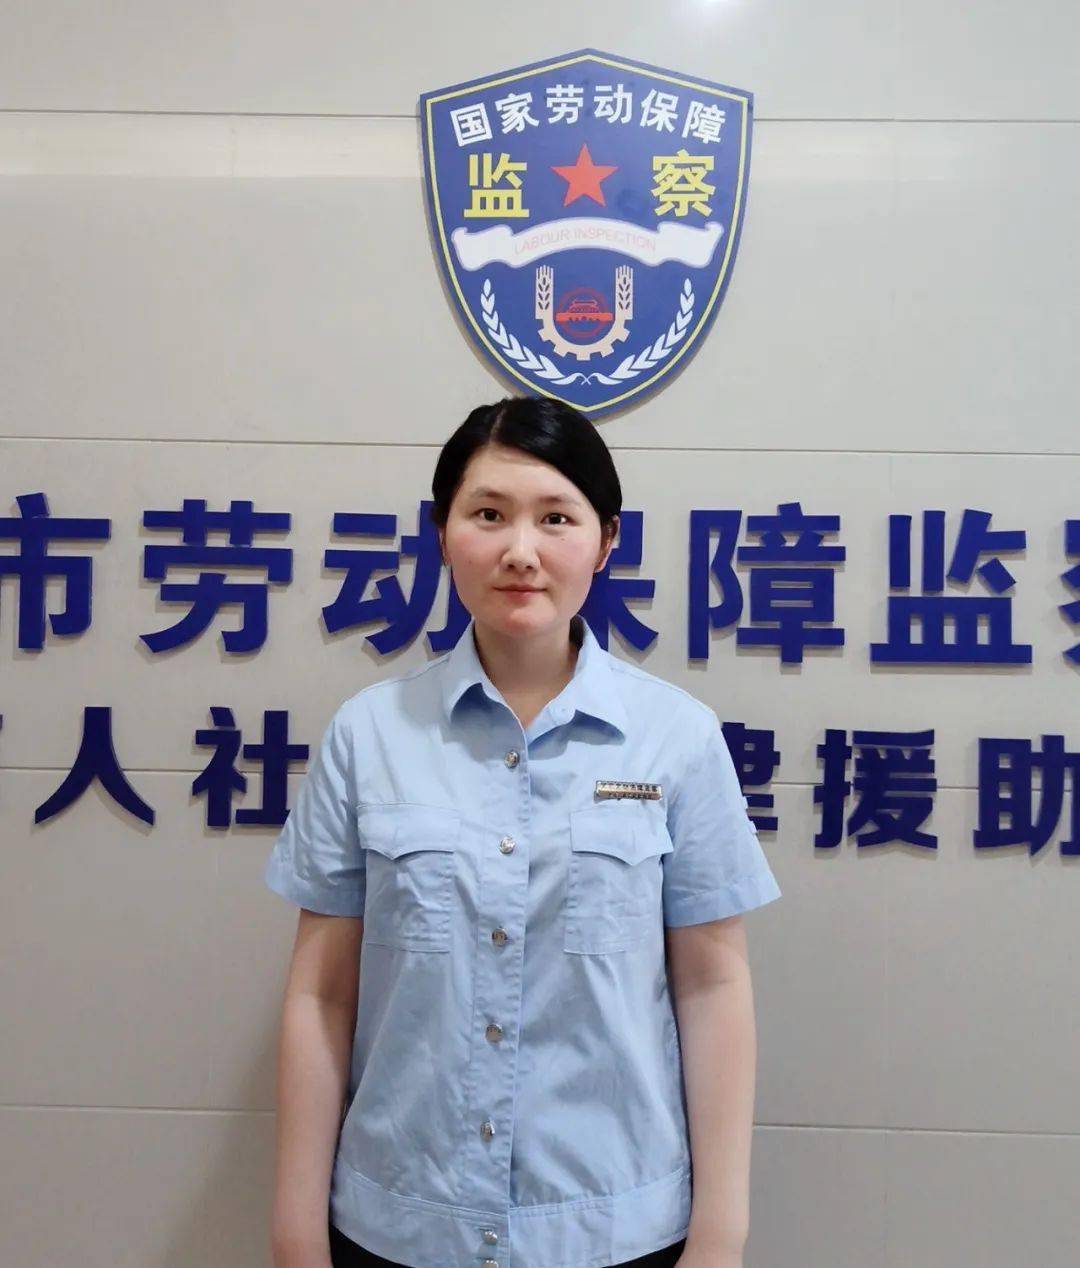 张津,毕业于福州大学,2010年10月至今从事劳动保障监察工作,现任龙岩